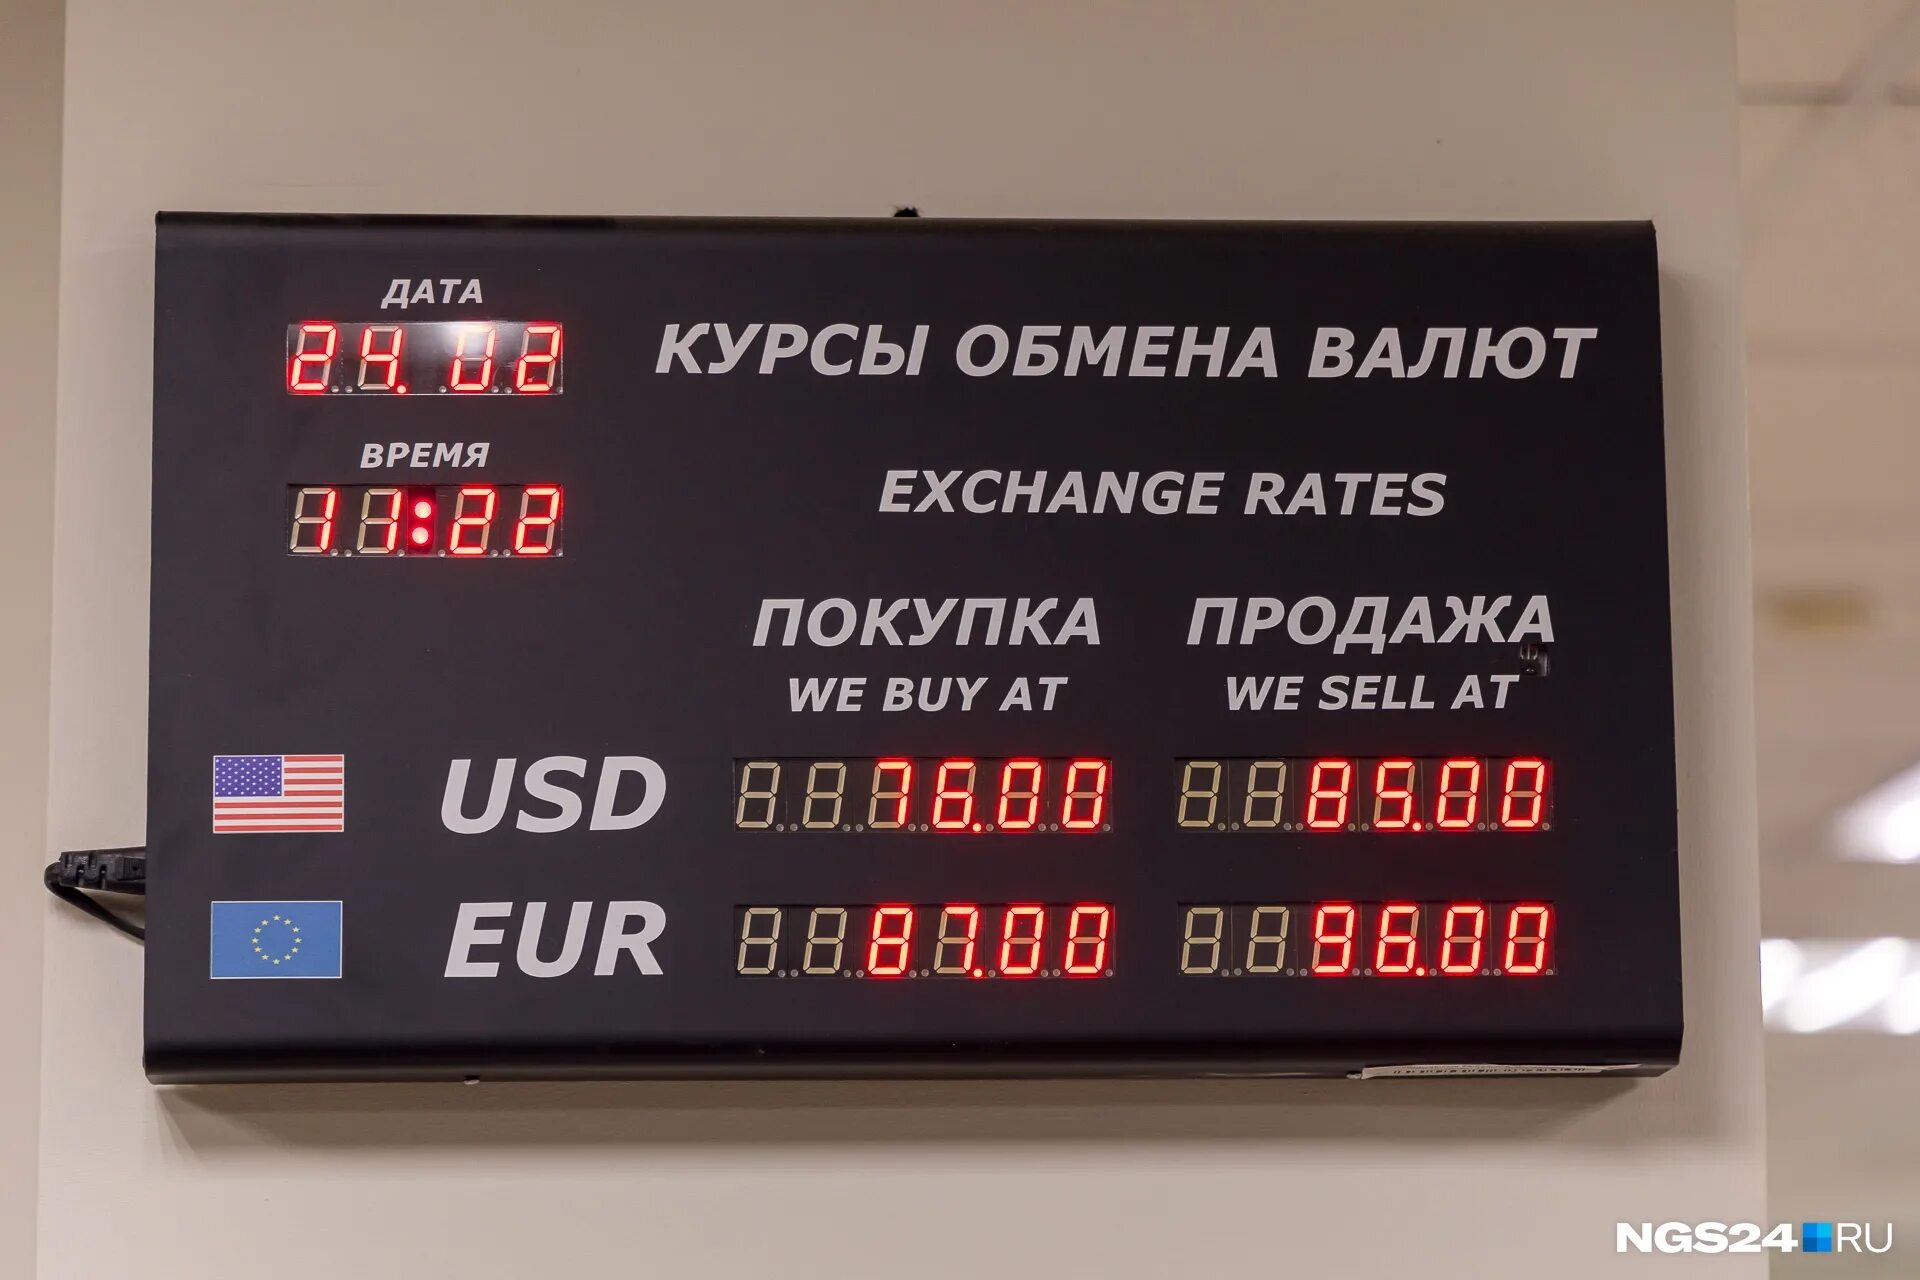 Покупка доллара красноярск сегодня. Обменник валют. Курсы обмена валют. Обменные курсы валют. Размен валюты.